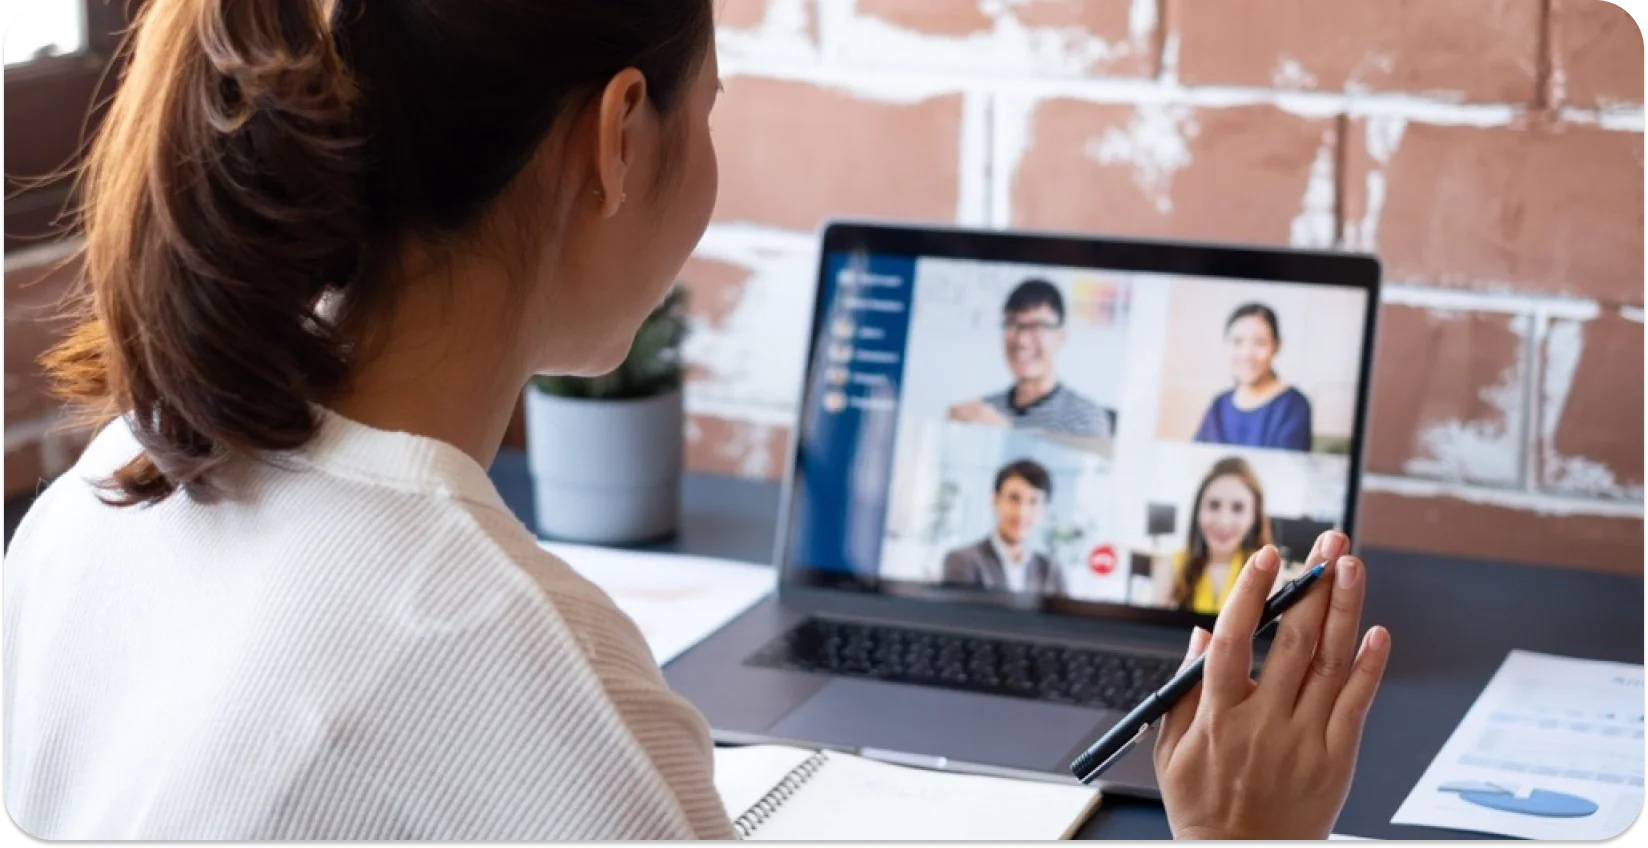 المشاركة المهنية في اجتماع افتراضي مع الزملاء على شاشة الكمبيوتر المحمول.